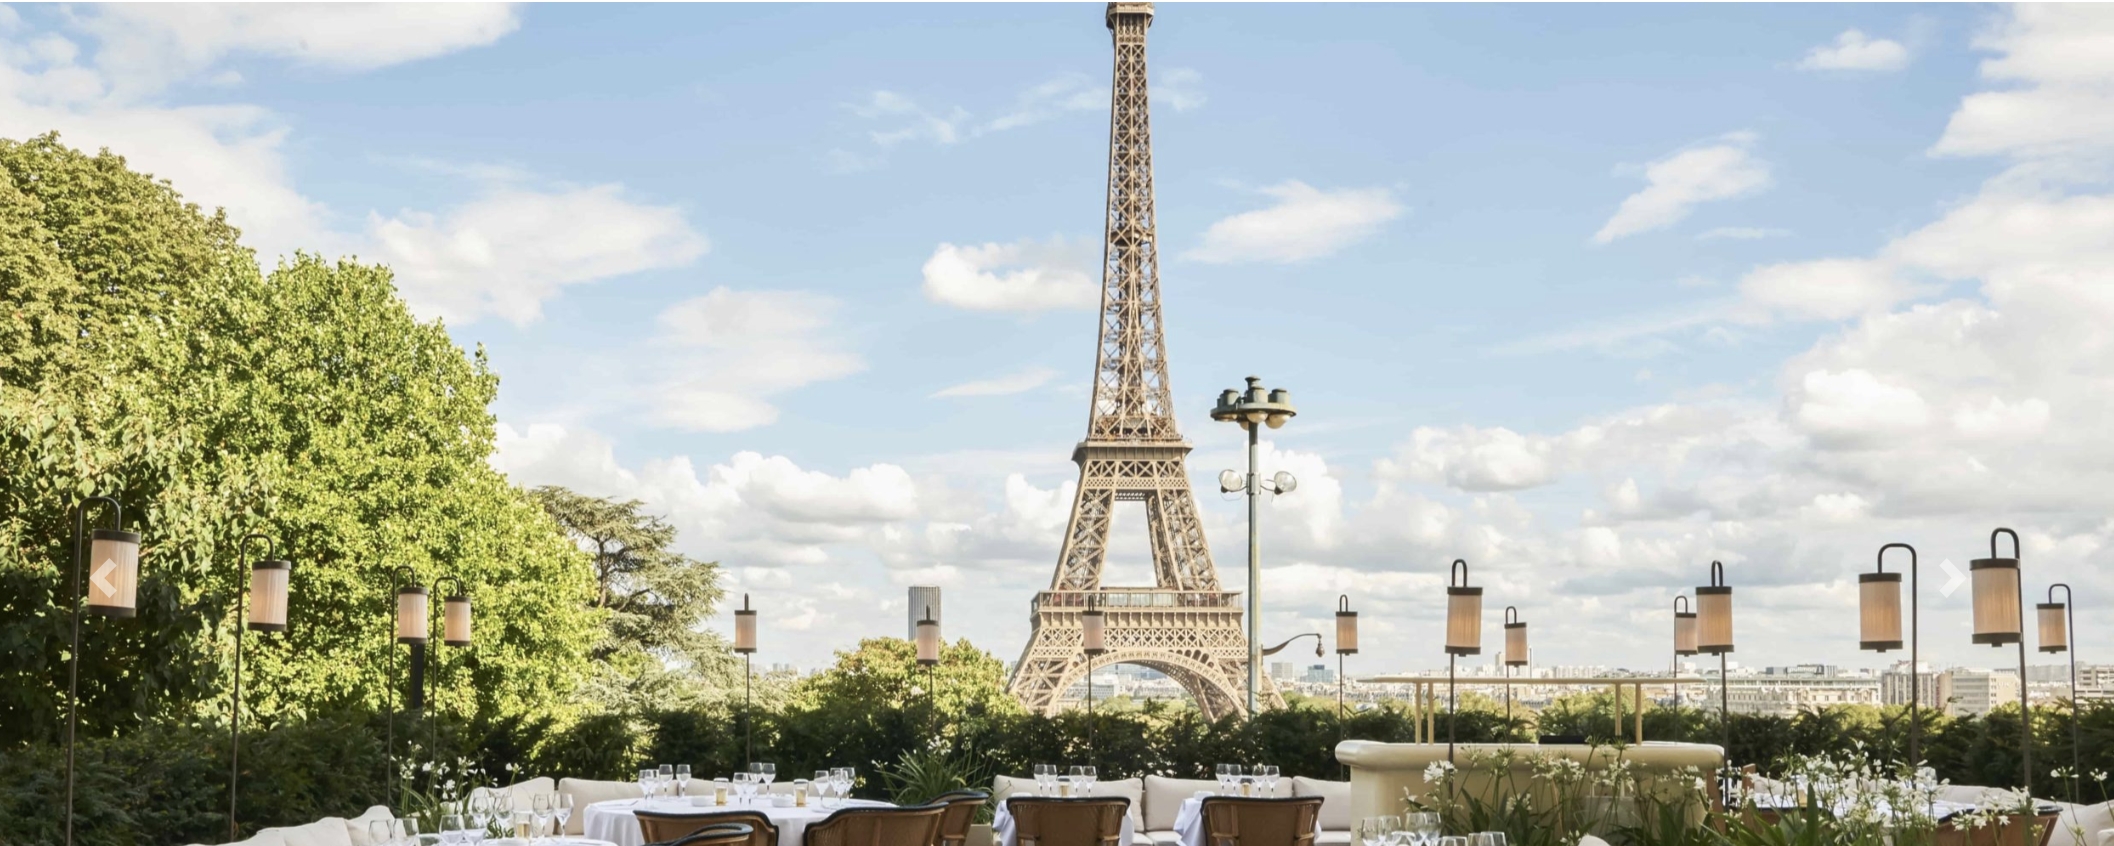 Terrasse avec tables et couverts restaurant girafe paris vue tour eiffel